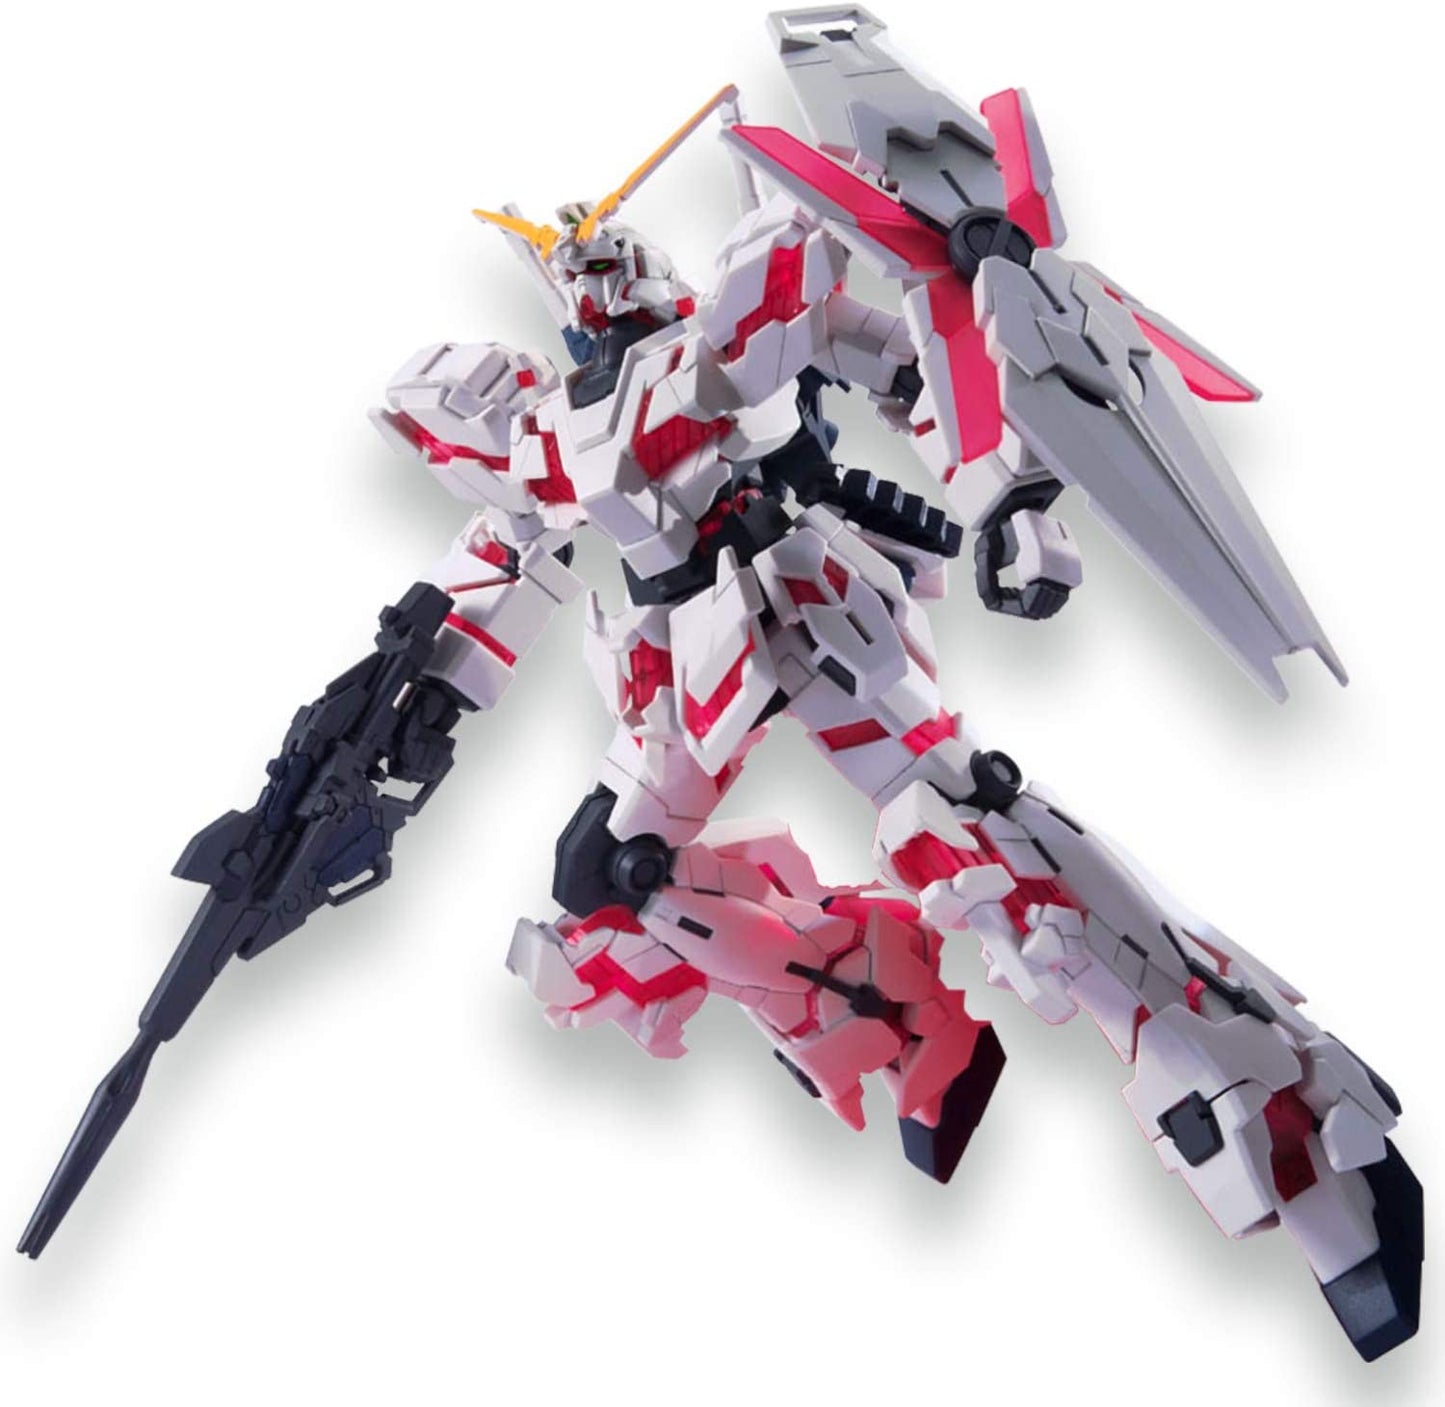 Unicorn Gundam (modo de destrucción) "Gundam UC", Kit de modelo Bandai HGUC 1/144